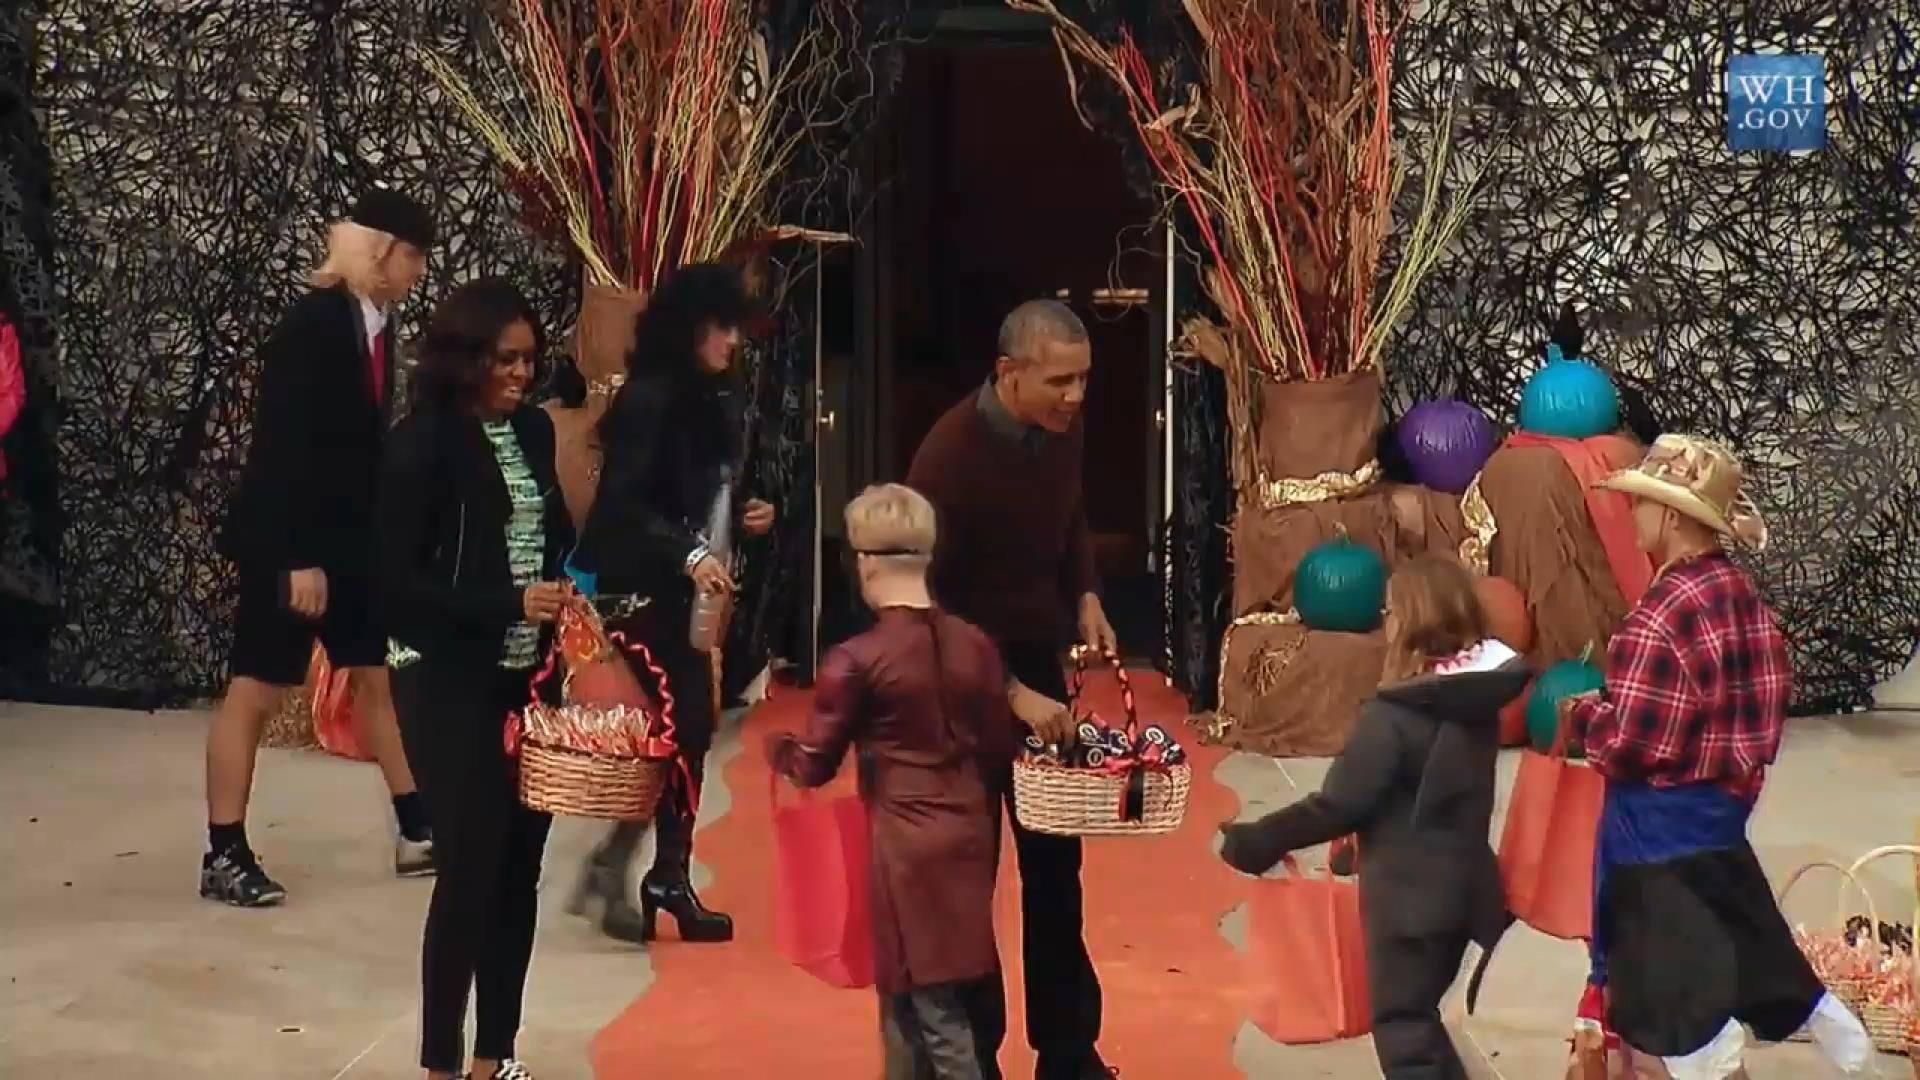 За конфетами к Обаме пришел малыш в костюме Папы Римского